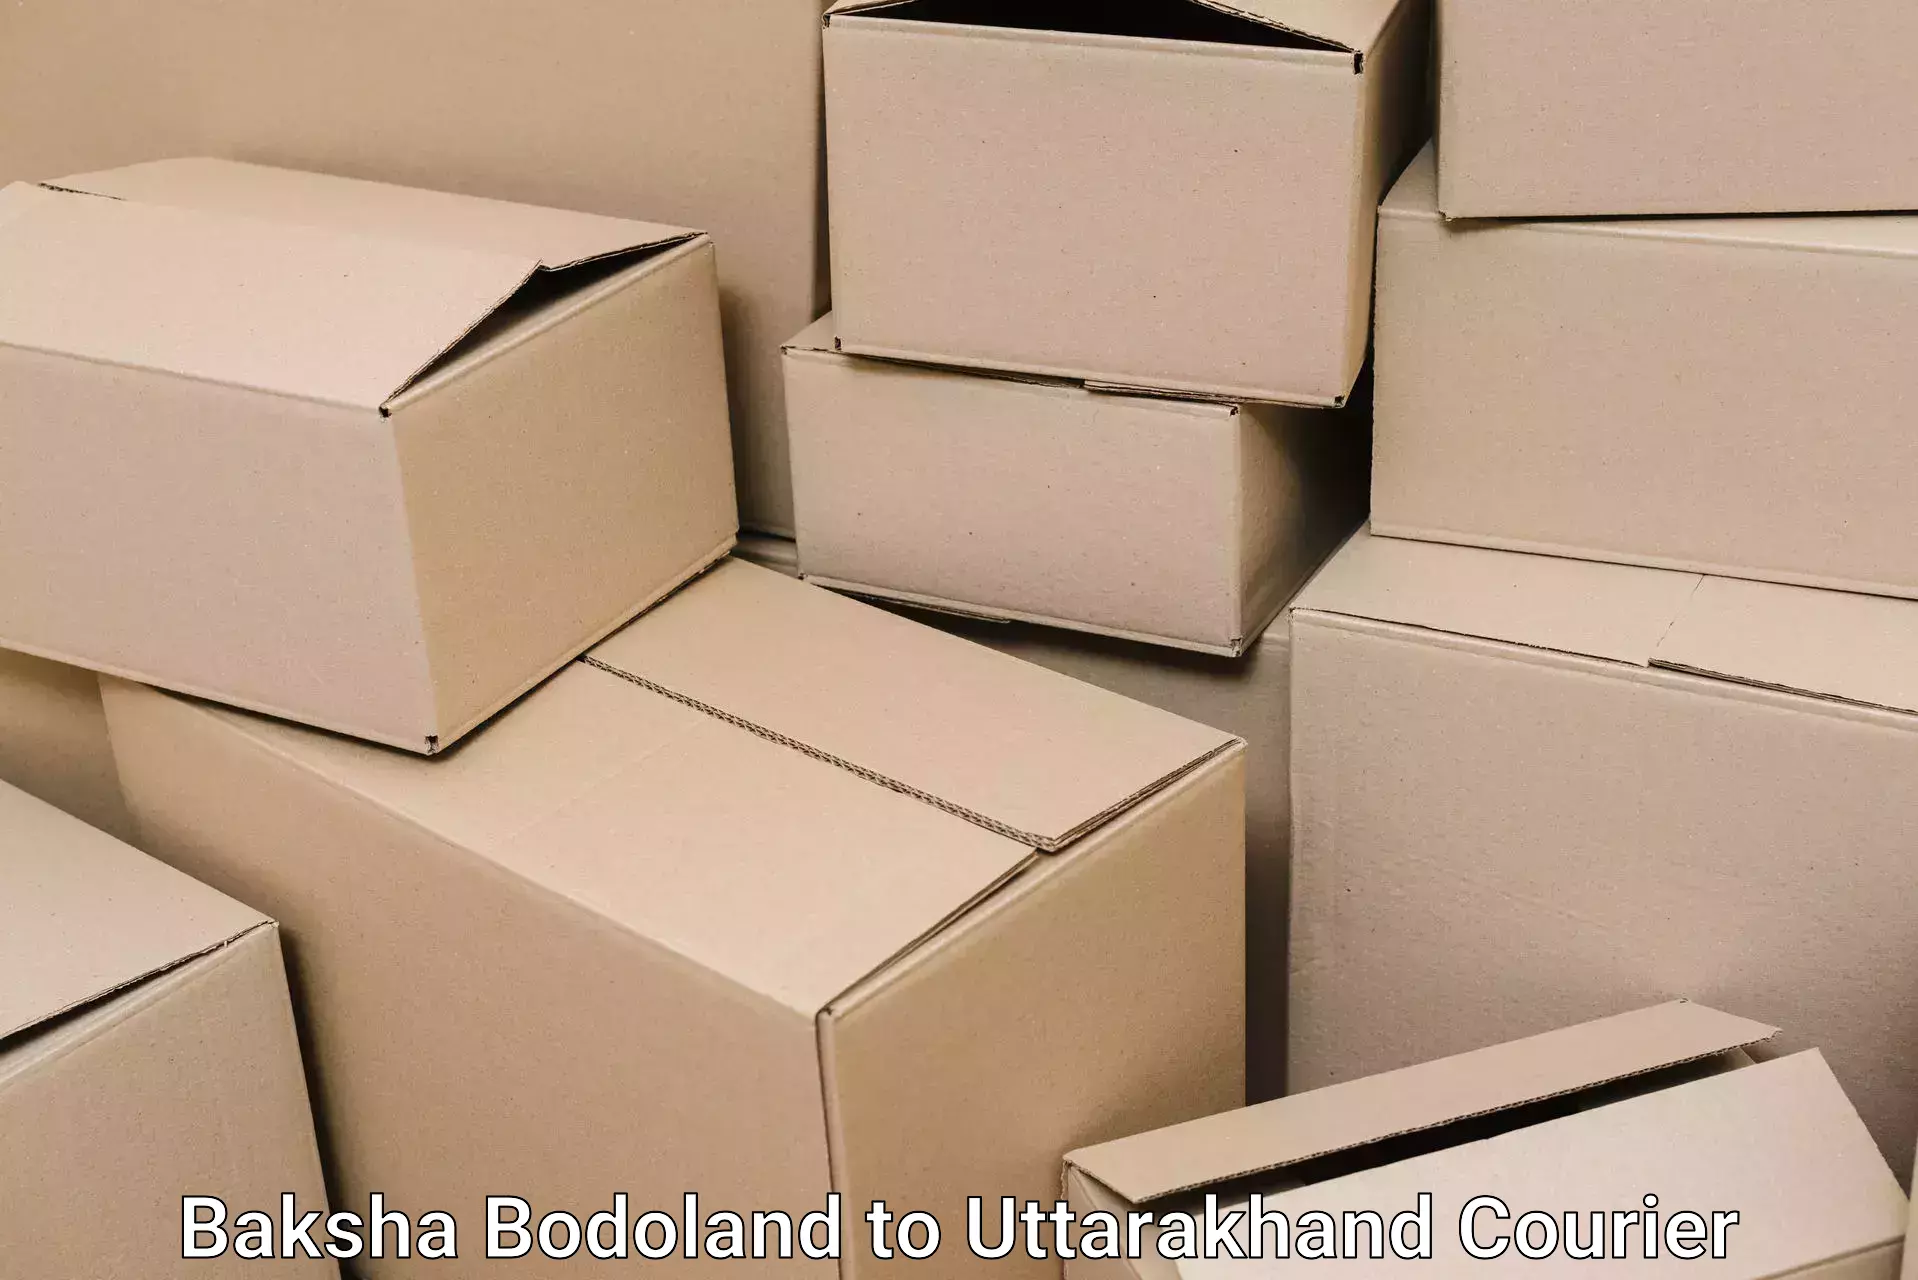 Furniture moving assistance Baksha Bodoland to Doiwala